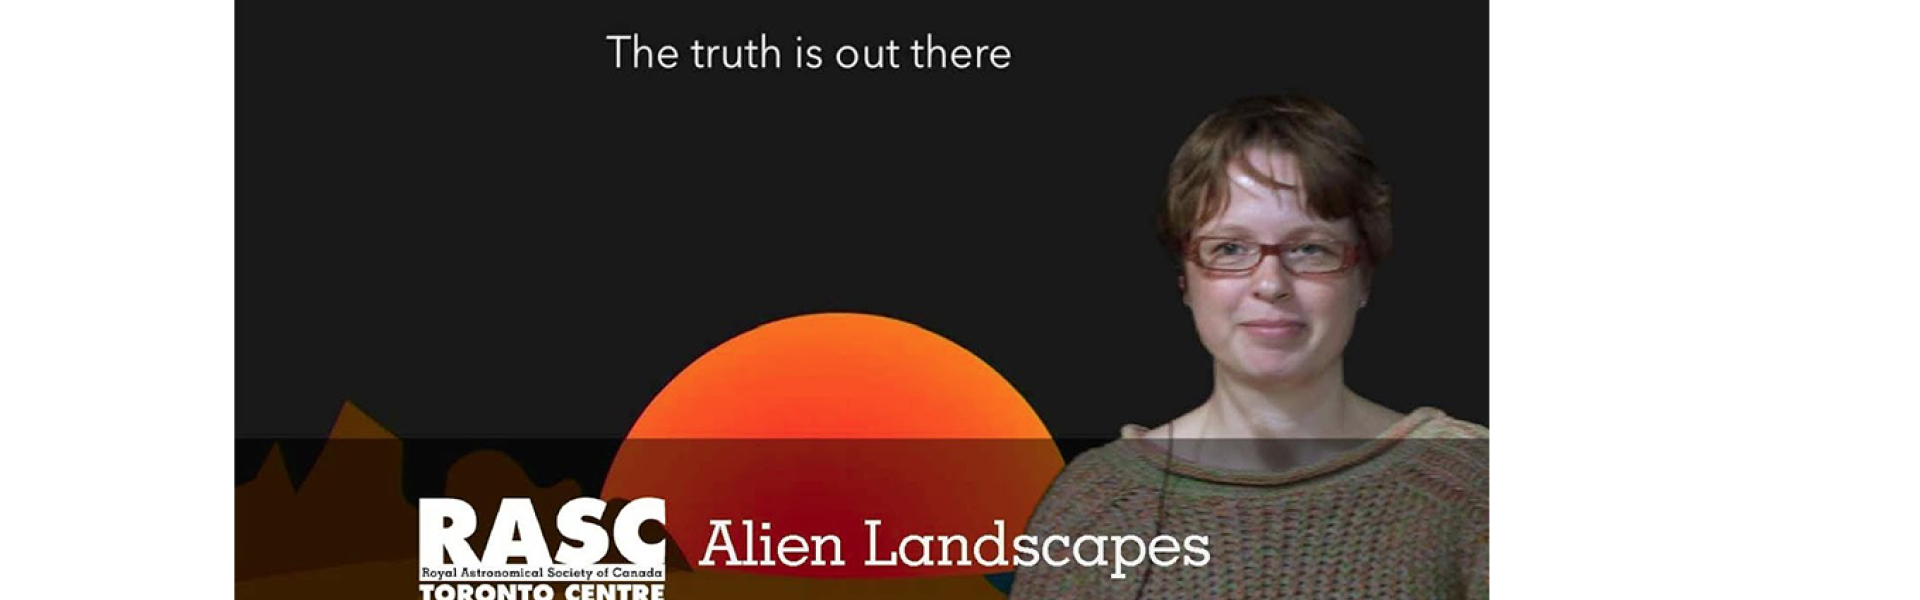 Alien Landscapes with Elizabeth Tasker